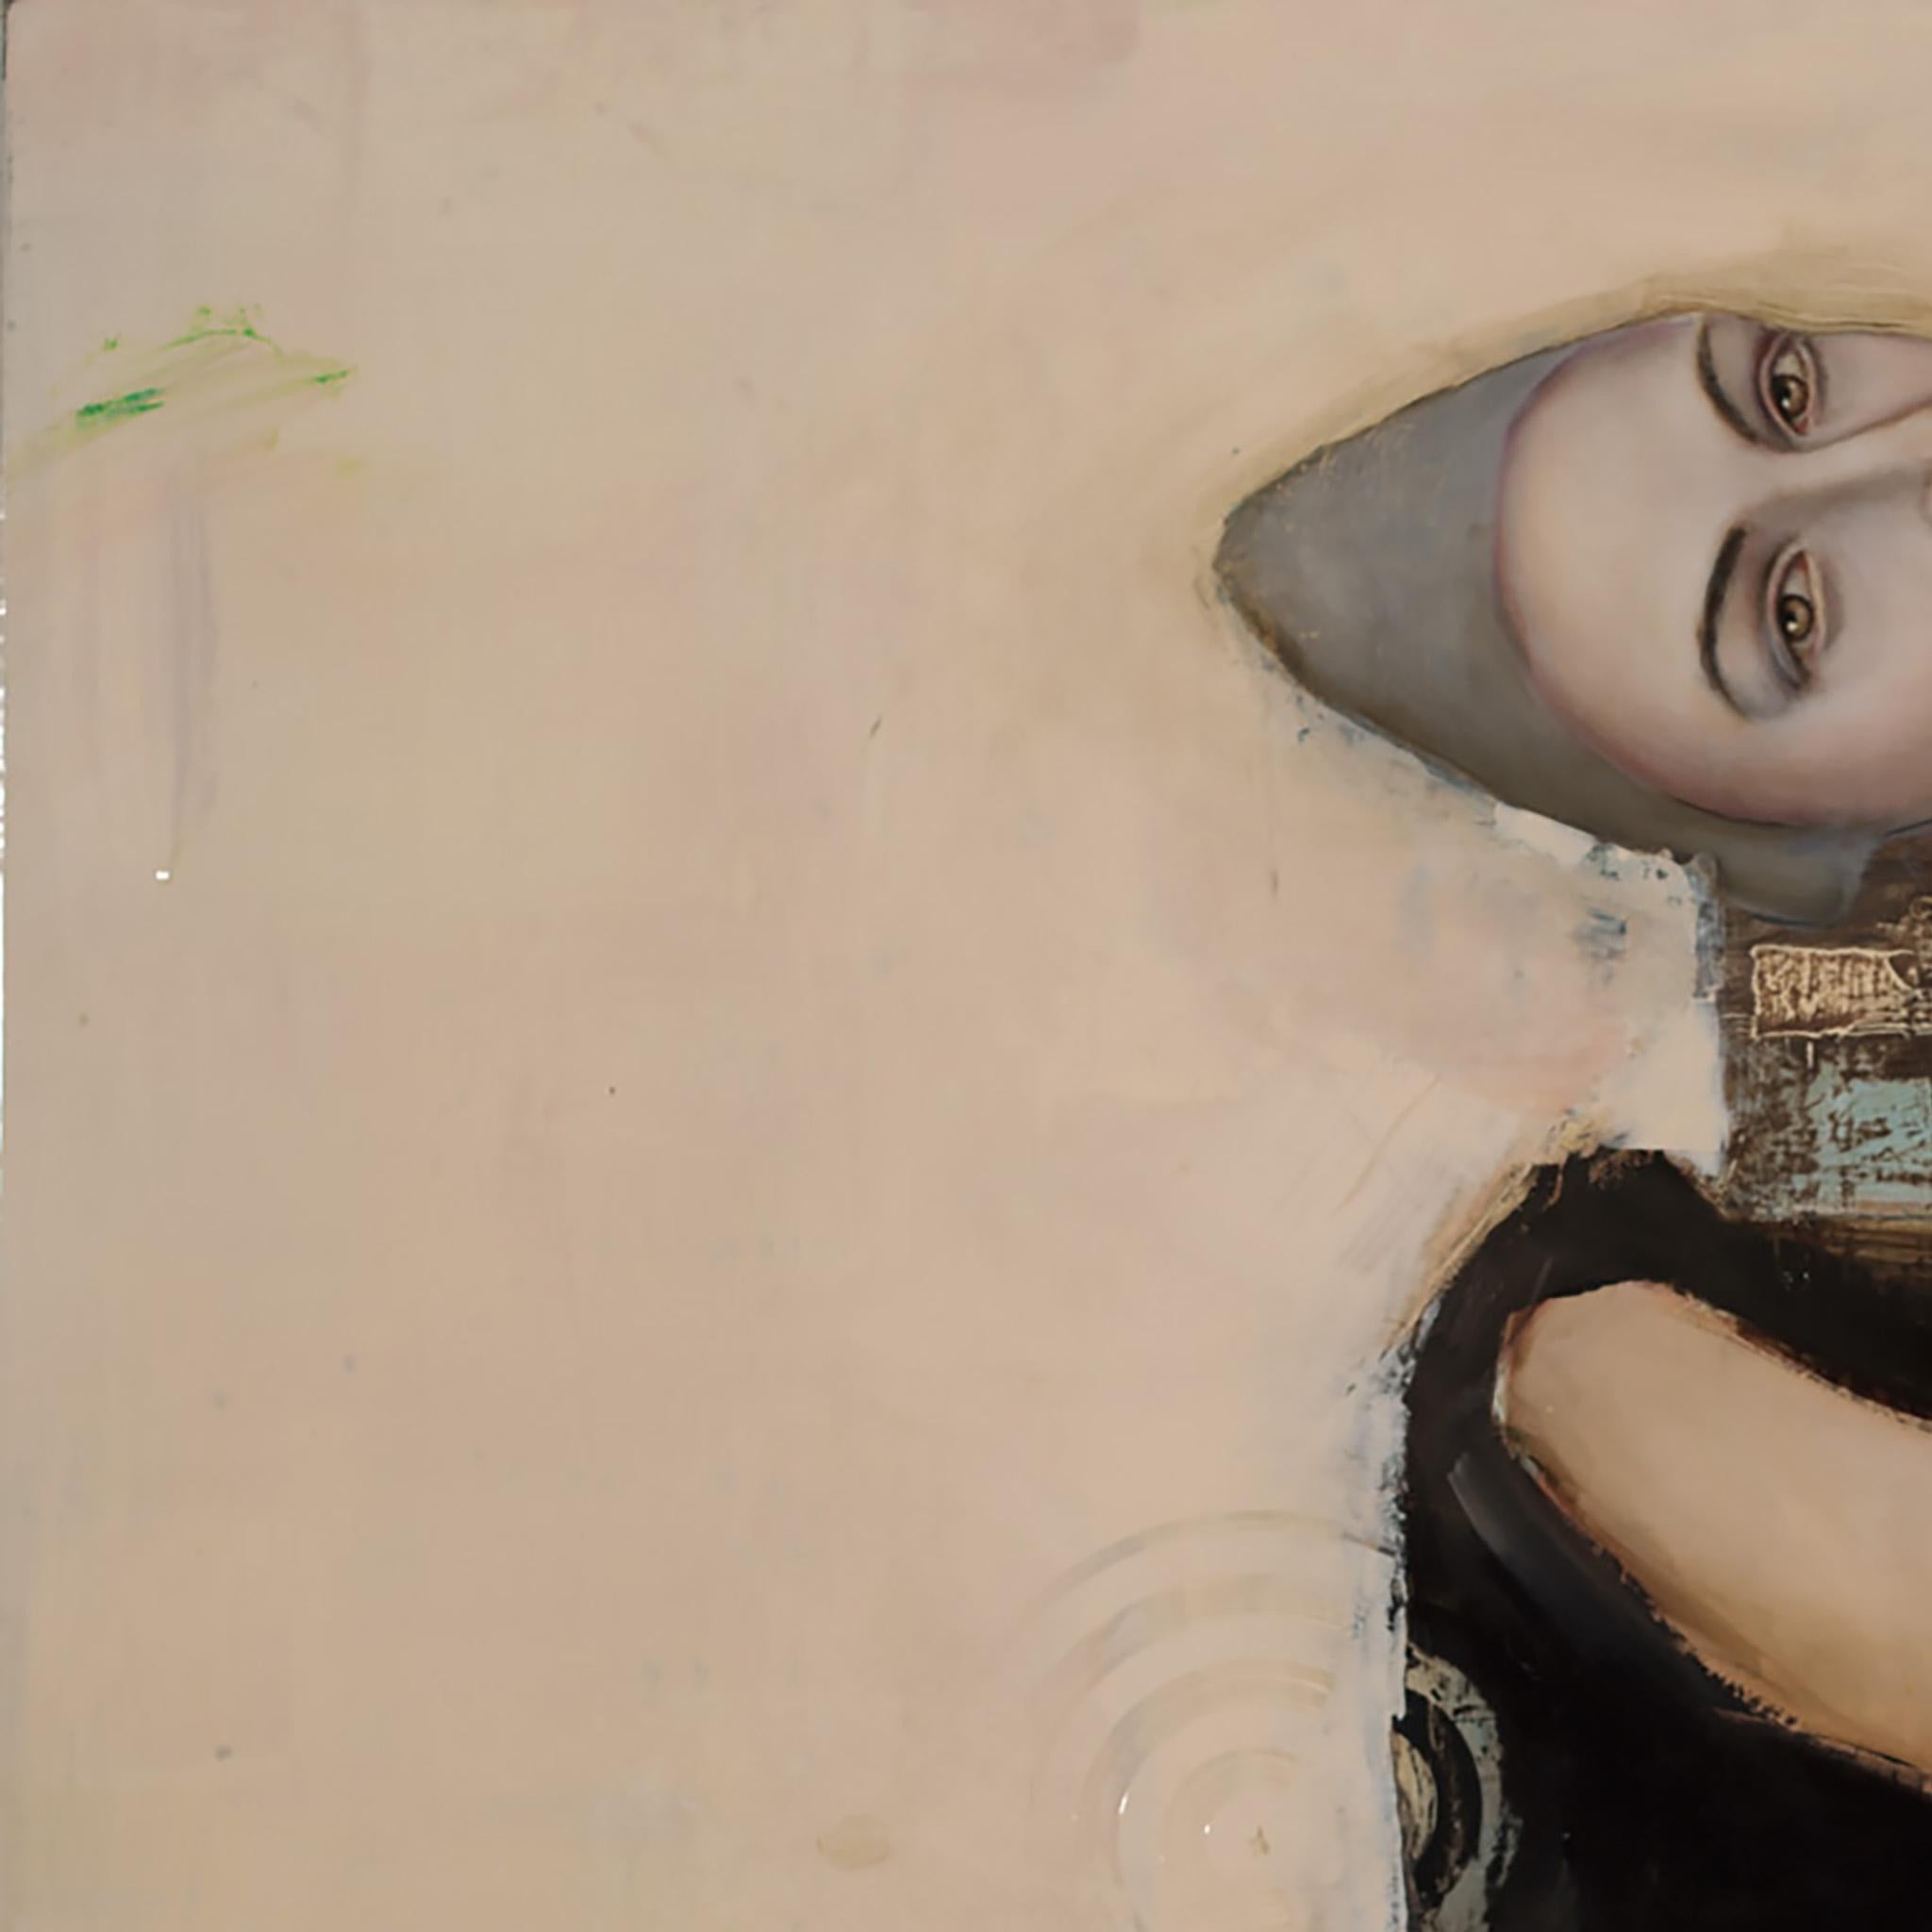 « Mis en scène », huile sur toile, maître mystérieux et fantaisiste du portrait pop art - Painting de Michele Mikesell